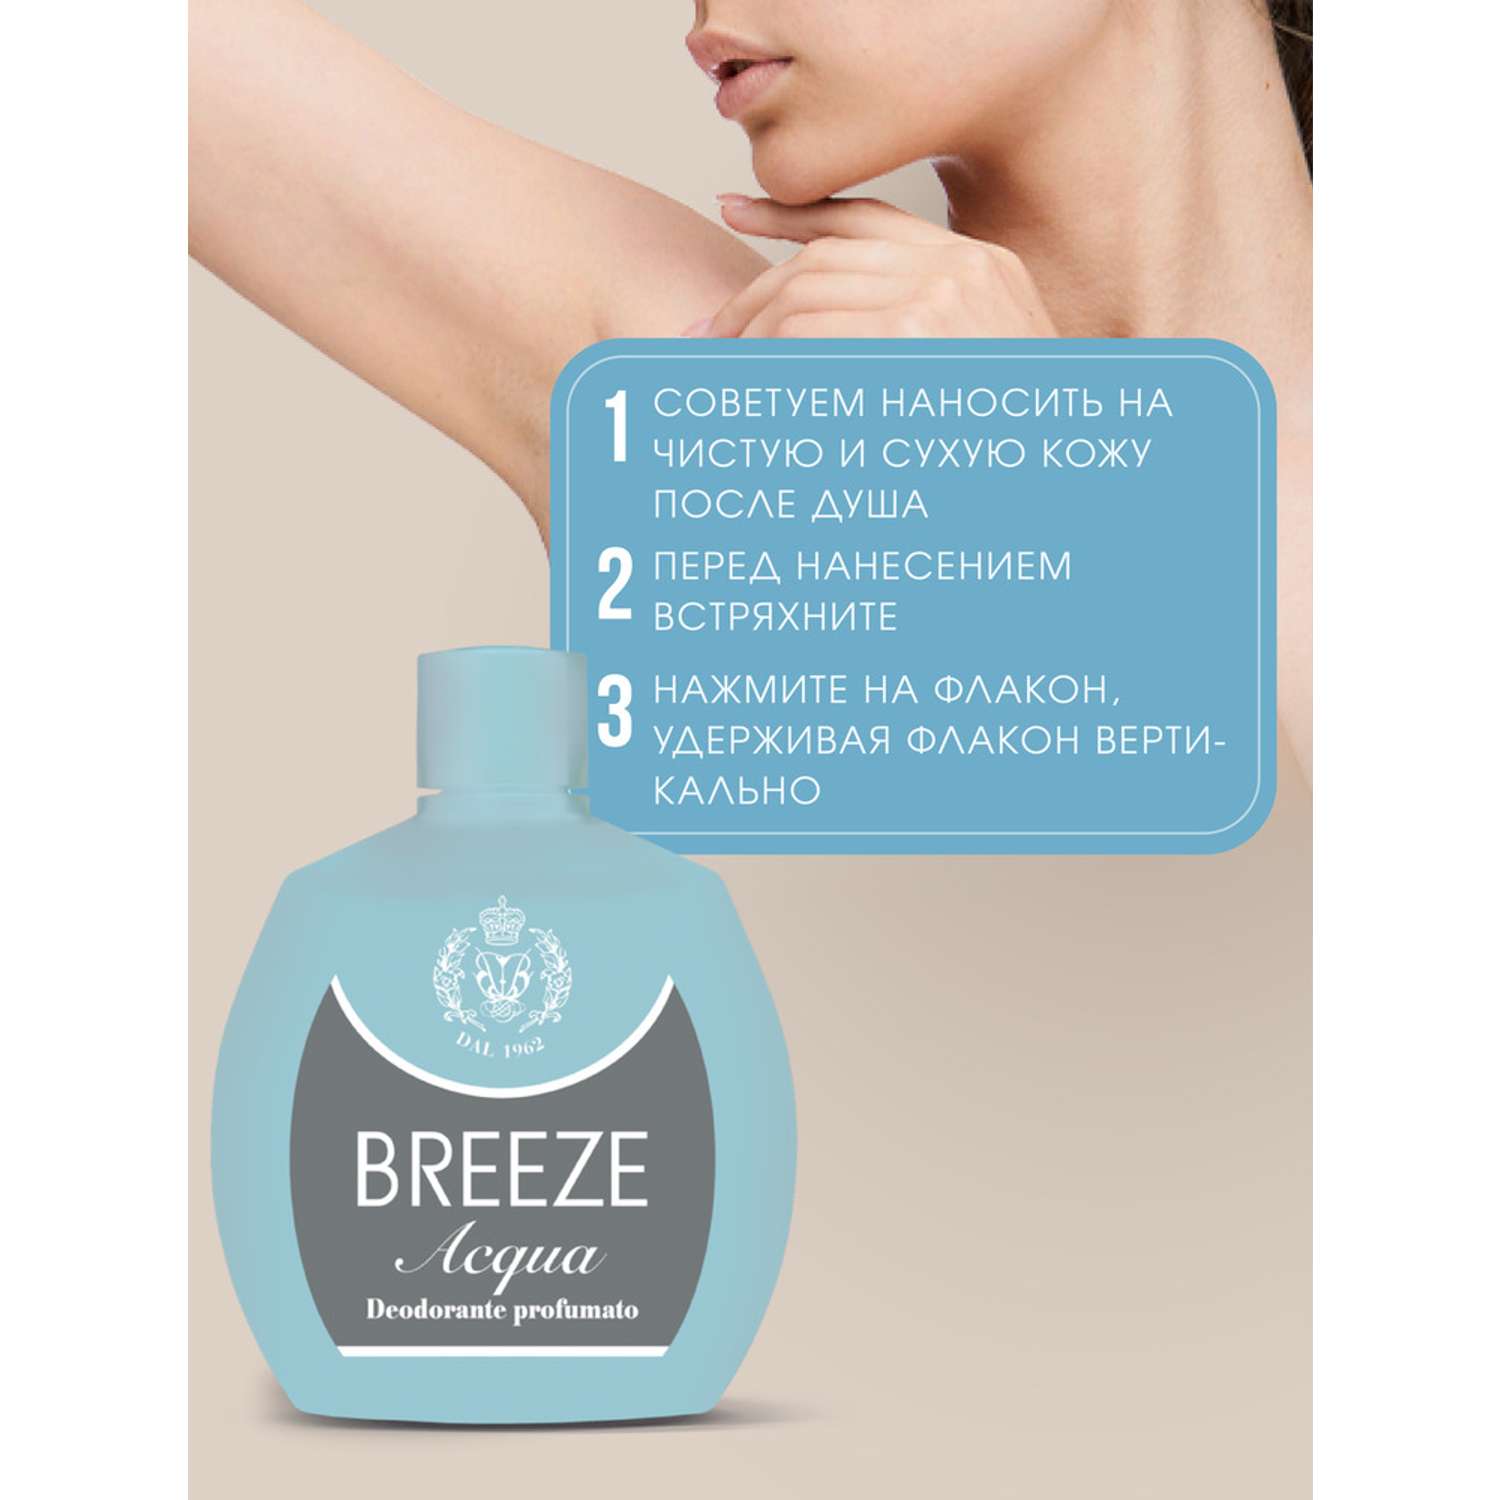 Дезодорант парфюмированный BREEZE acqua 100мл - фото 3